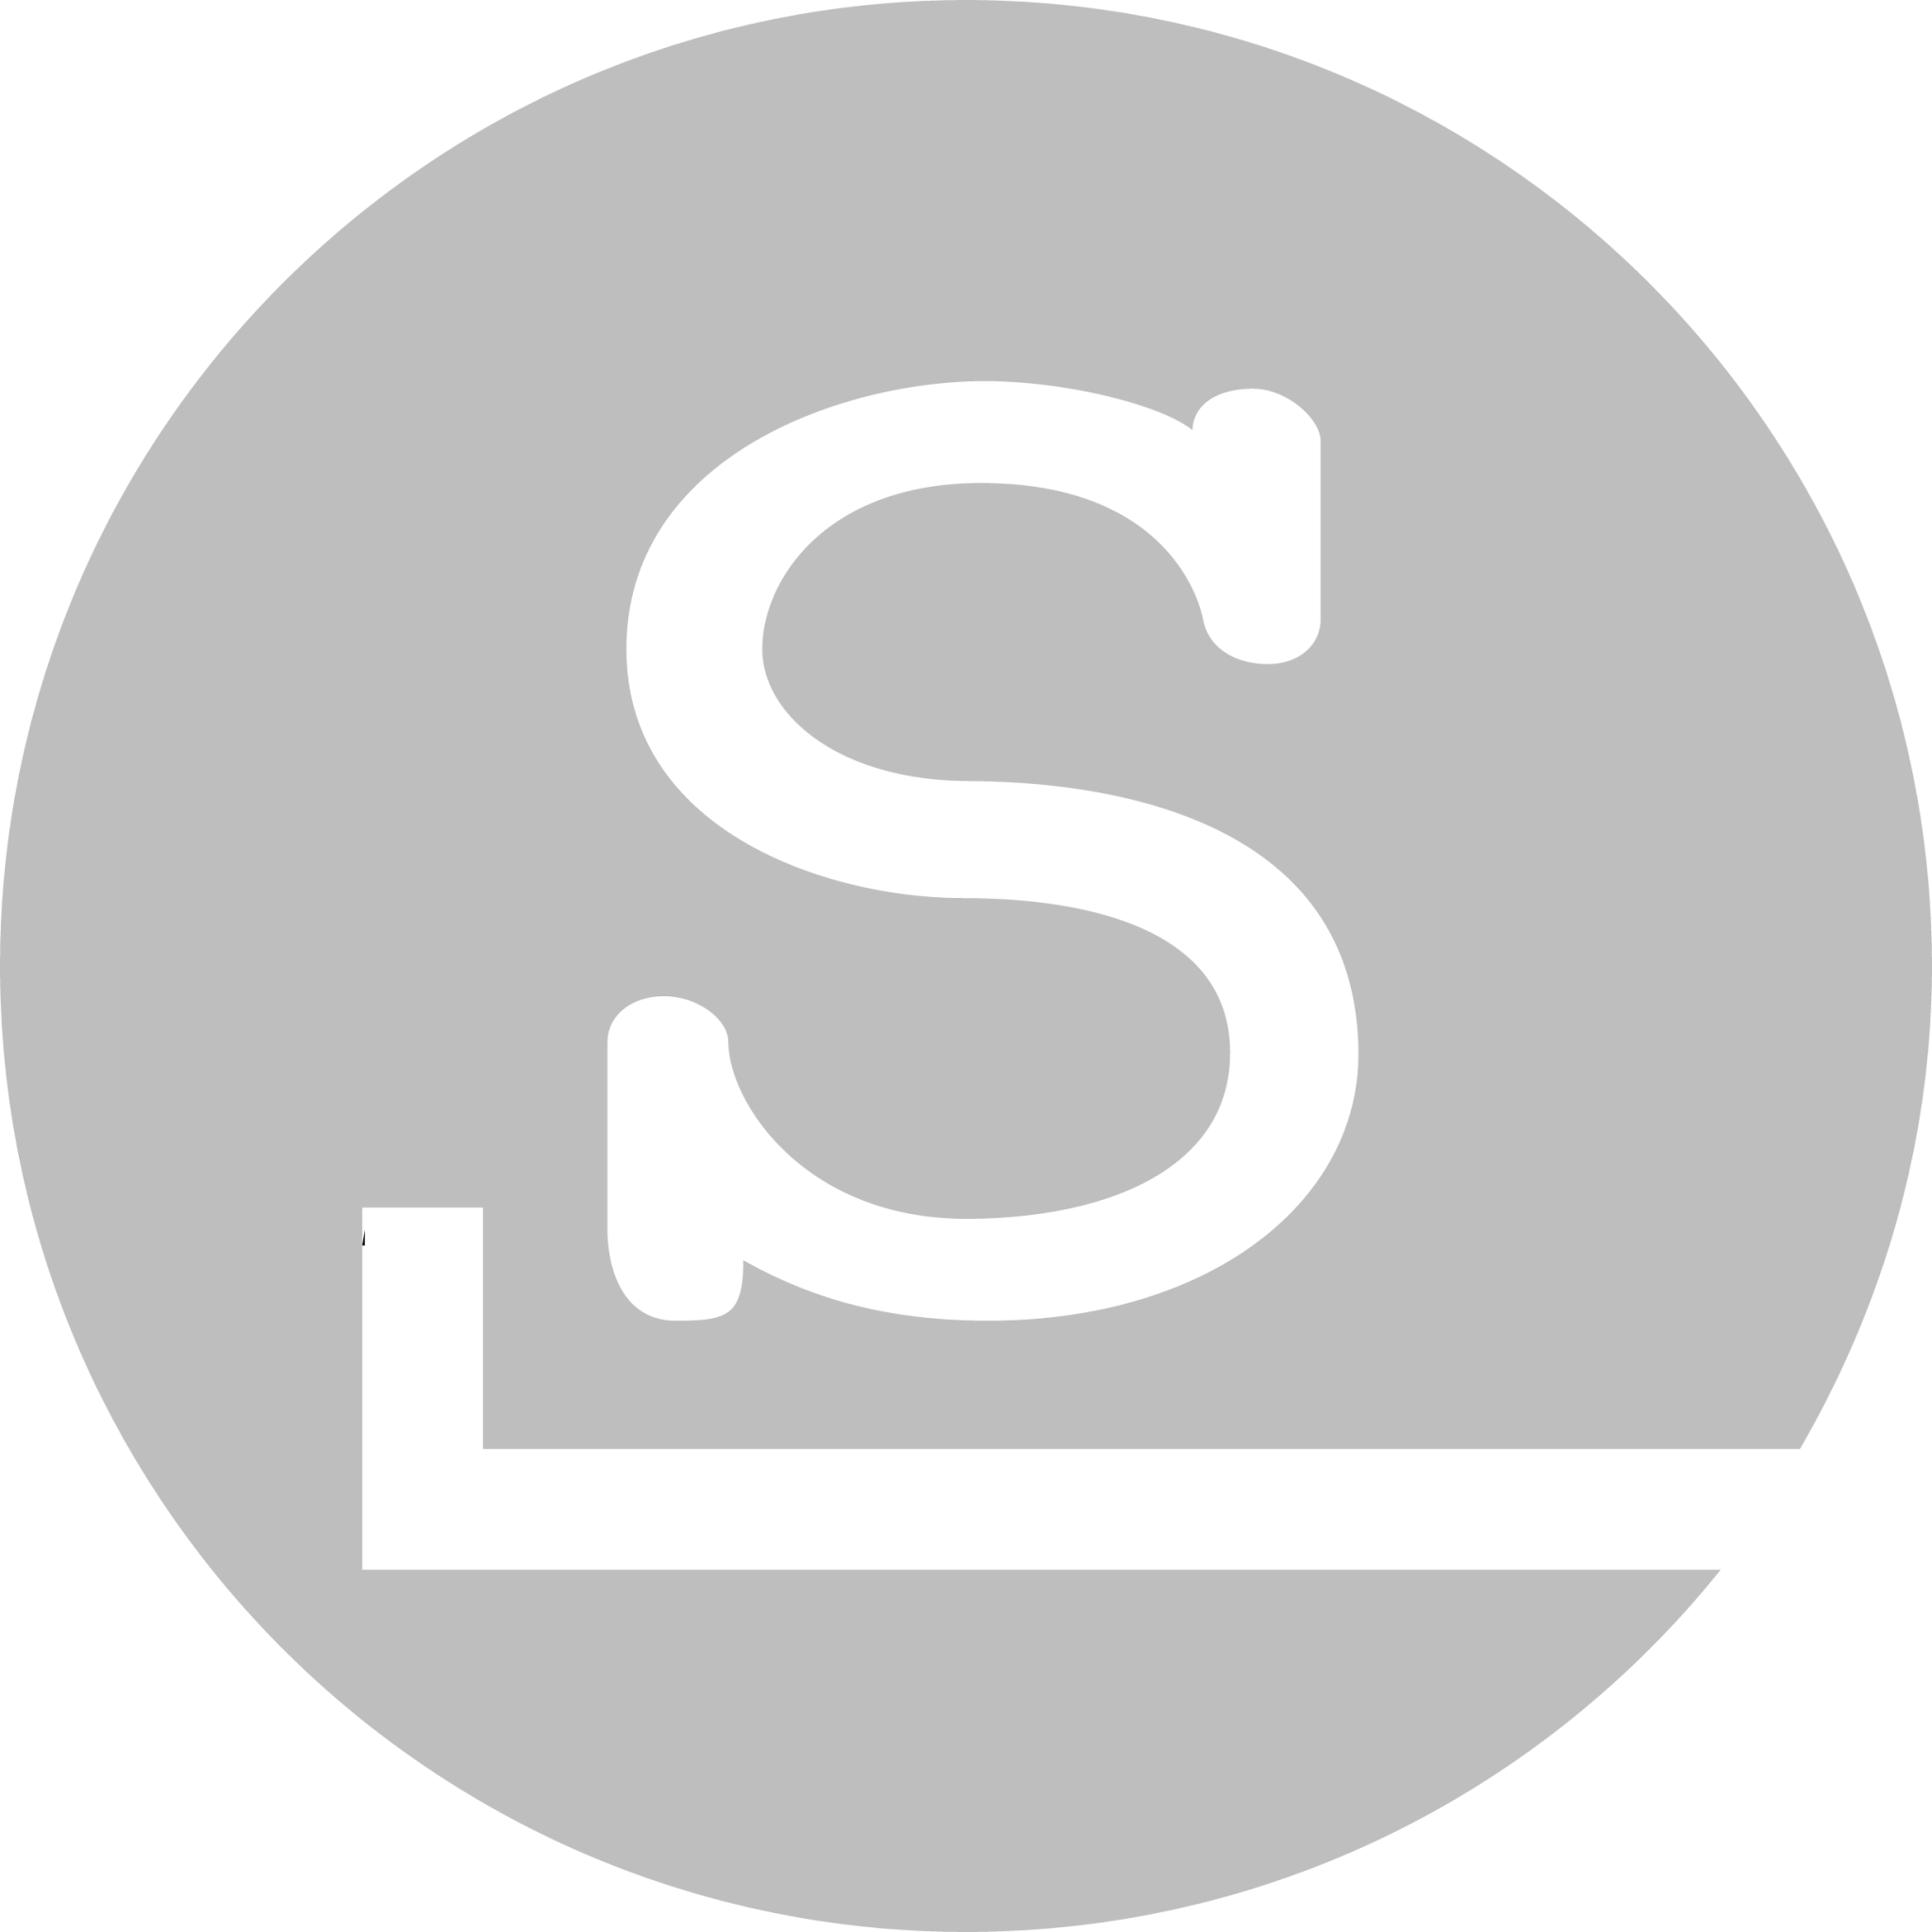 start here slackware symbolic icon